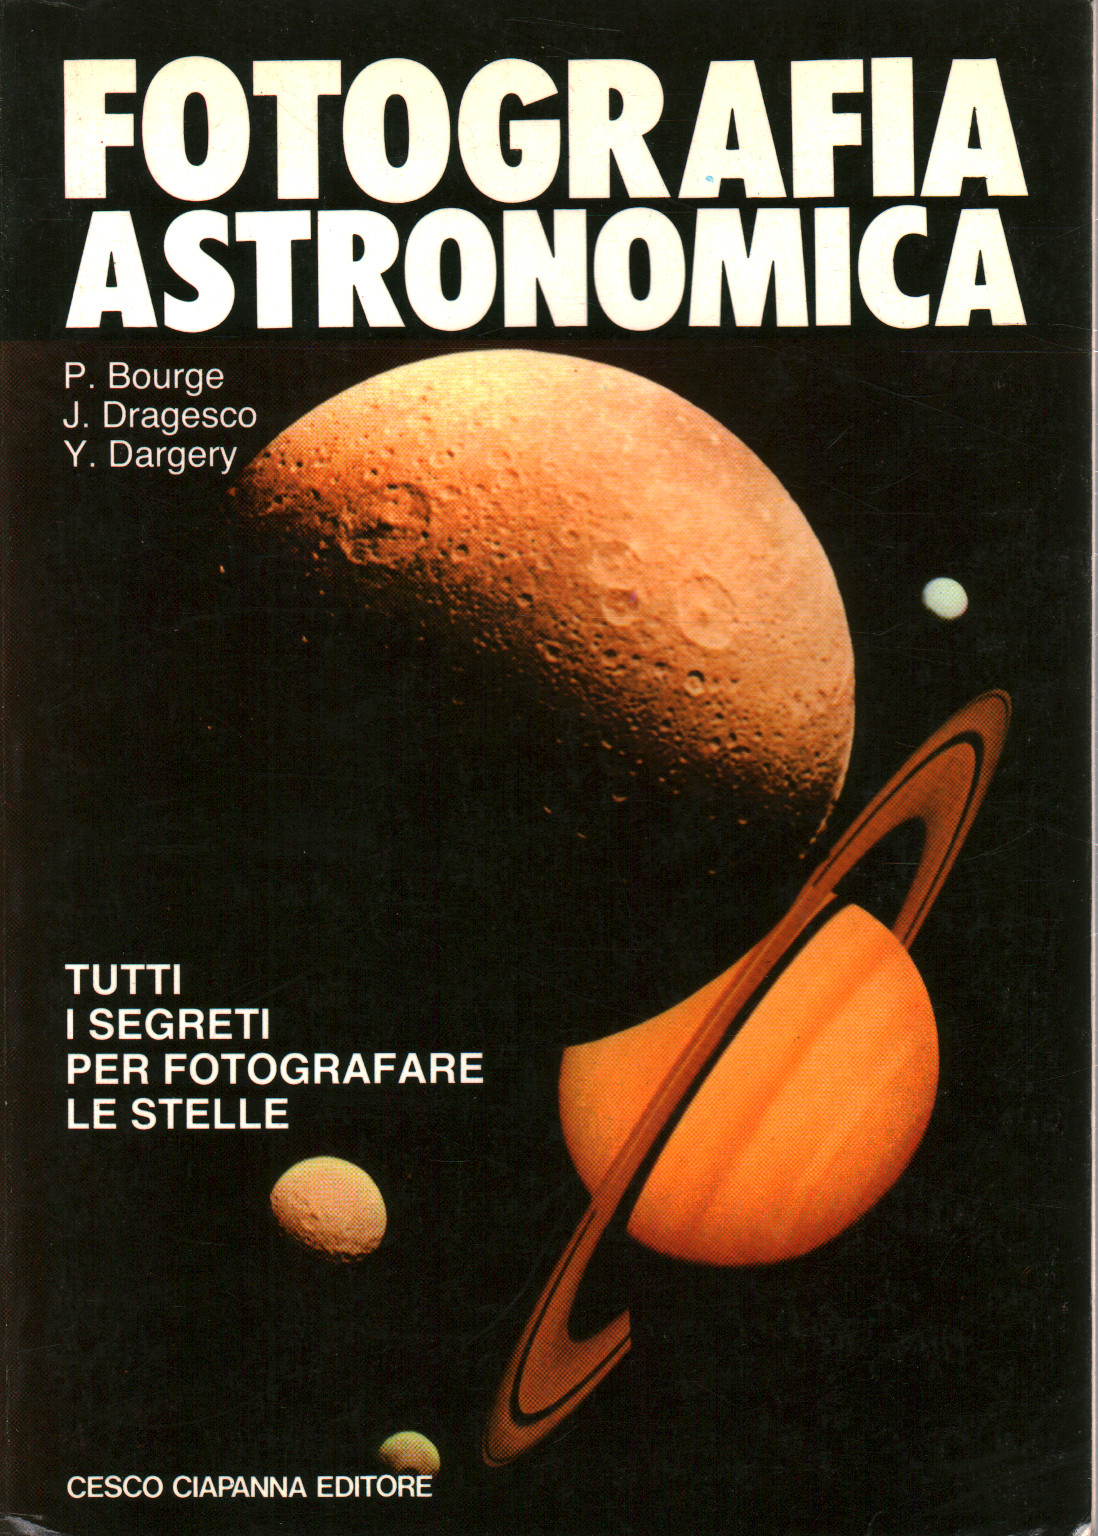 En la fotografía astronómica, s.una.